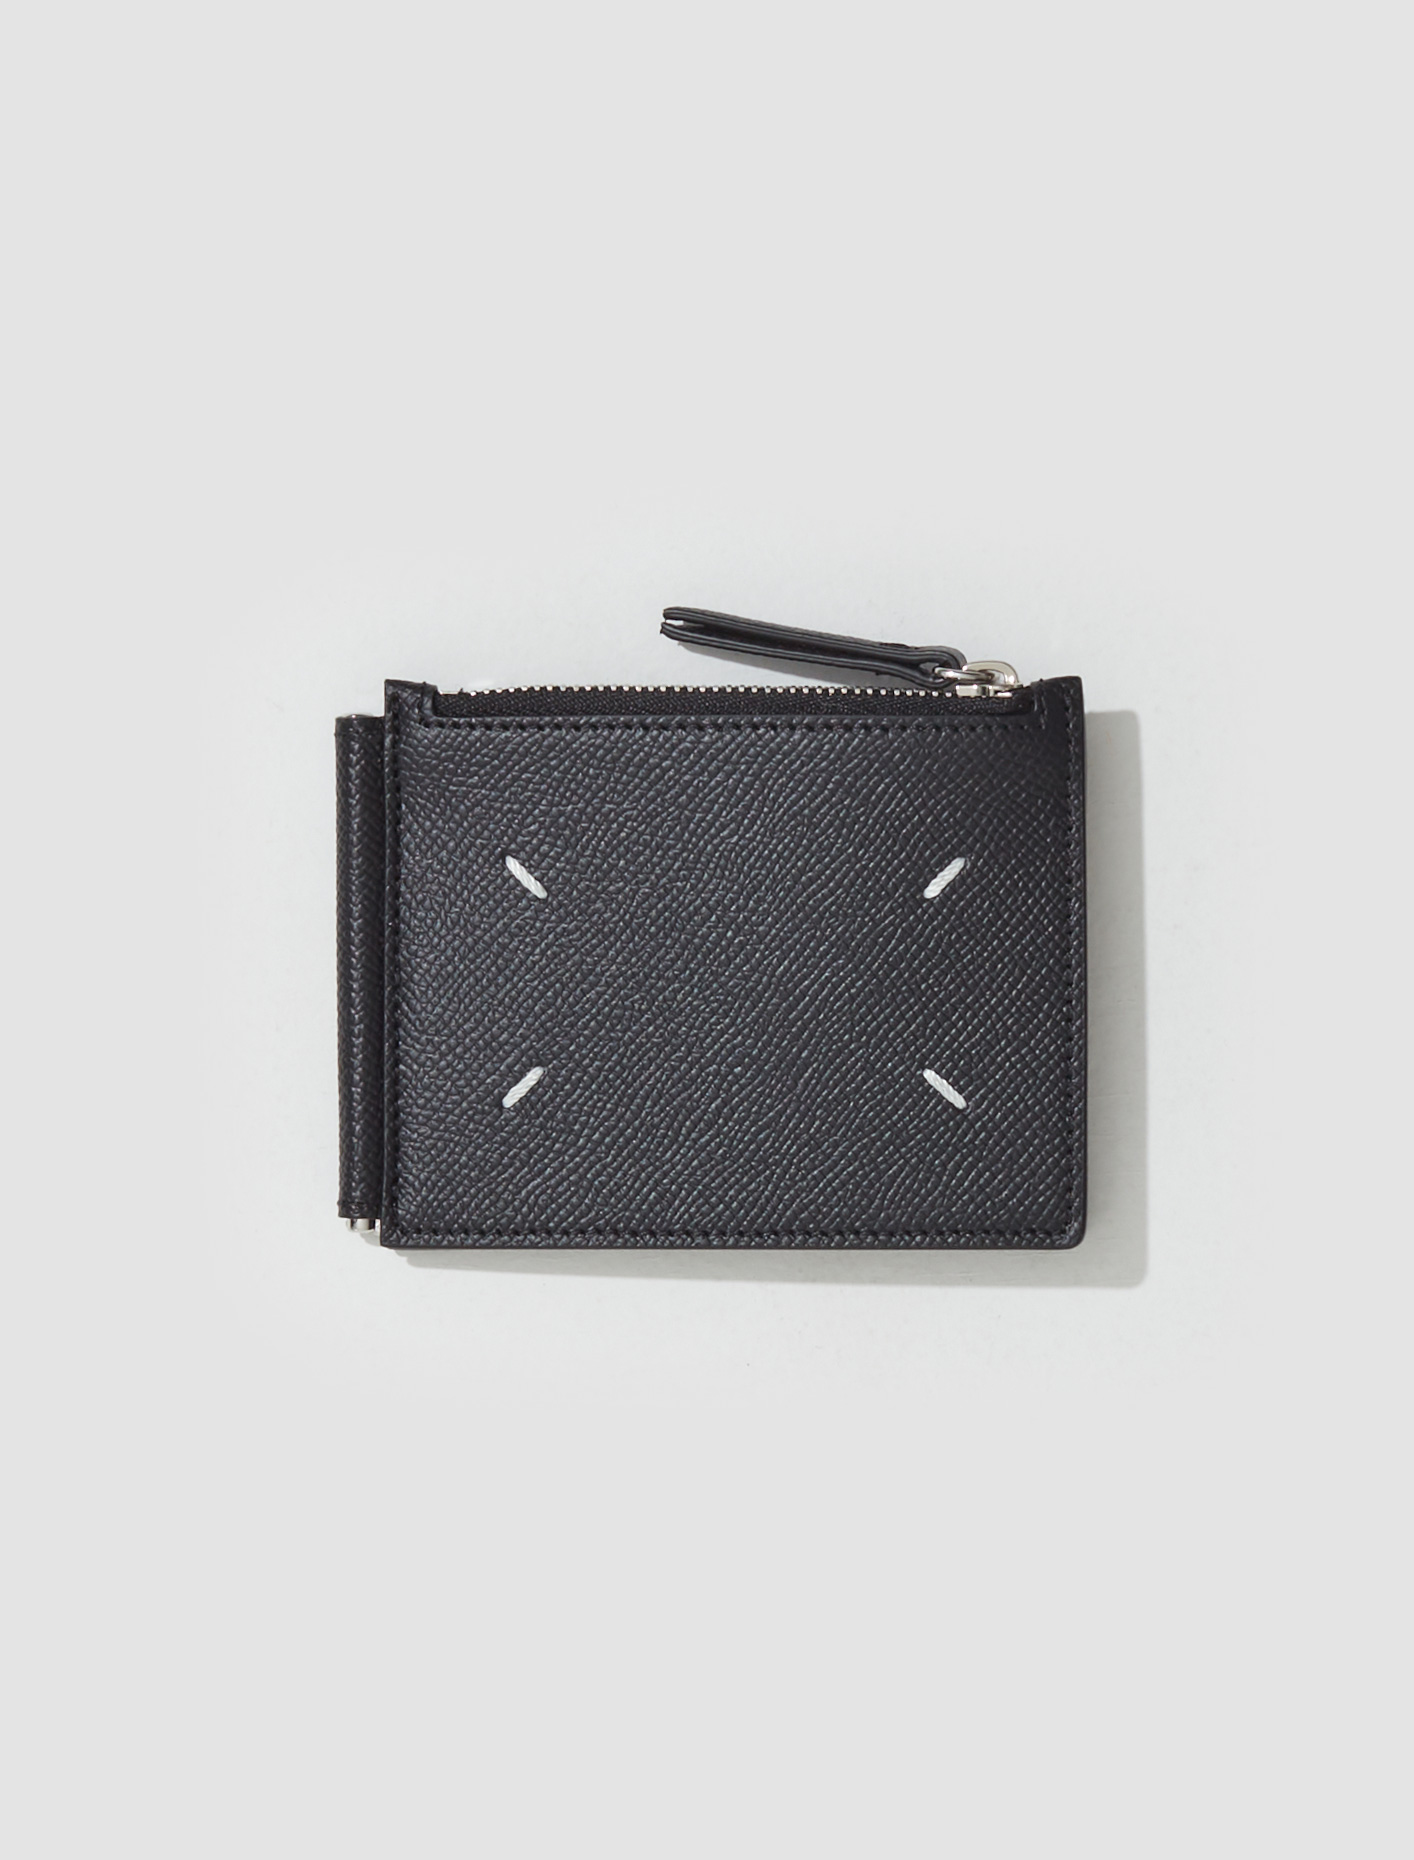 Maison Margiela Bi-fold Wallet in Black | Voo Store Berlin | Worldwide ...